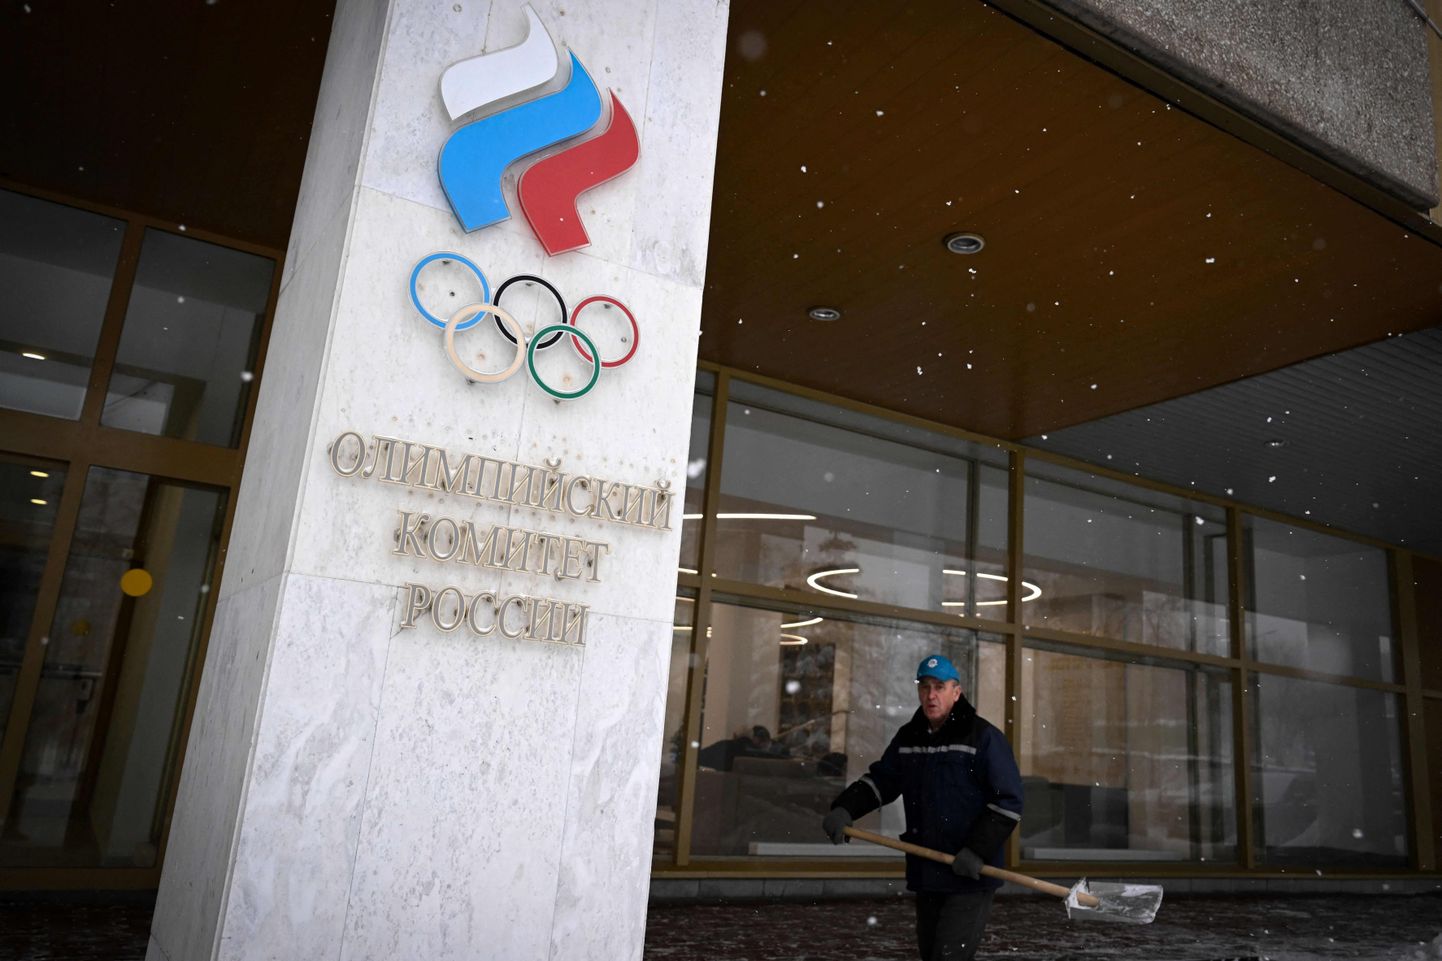 Venemaa olümpiakomitee. Pilt on illustreeriv.